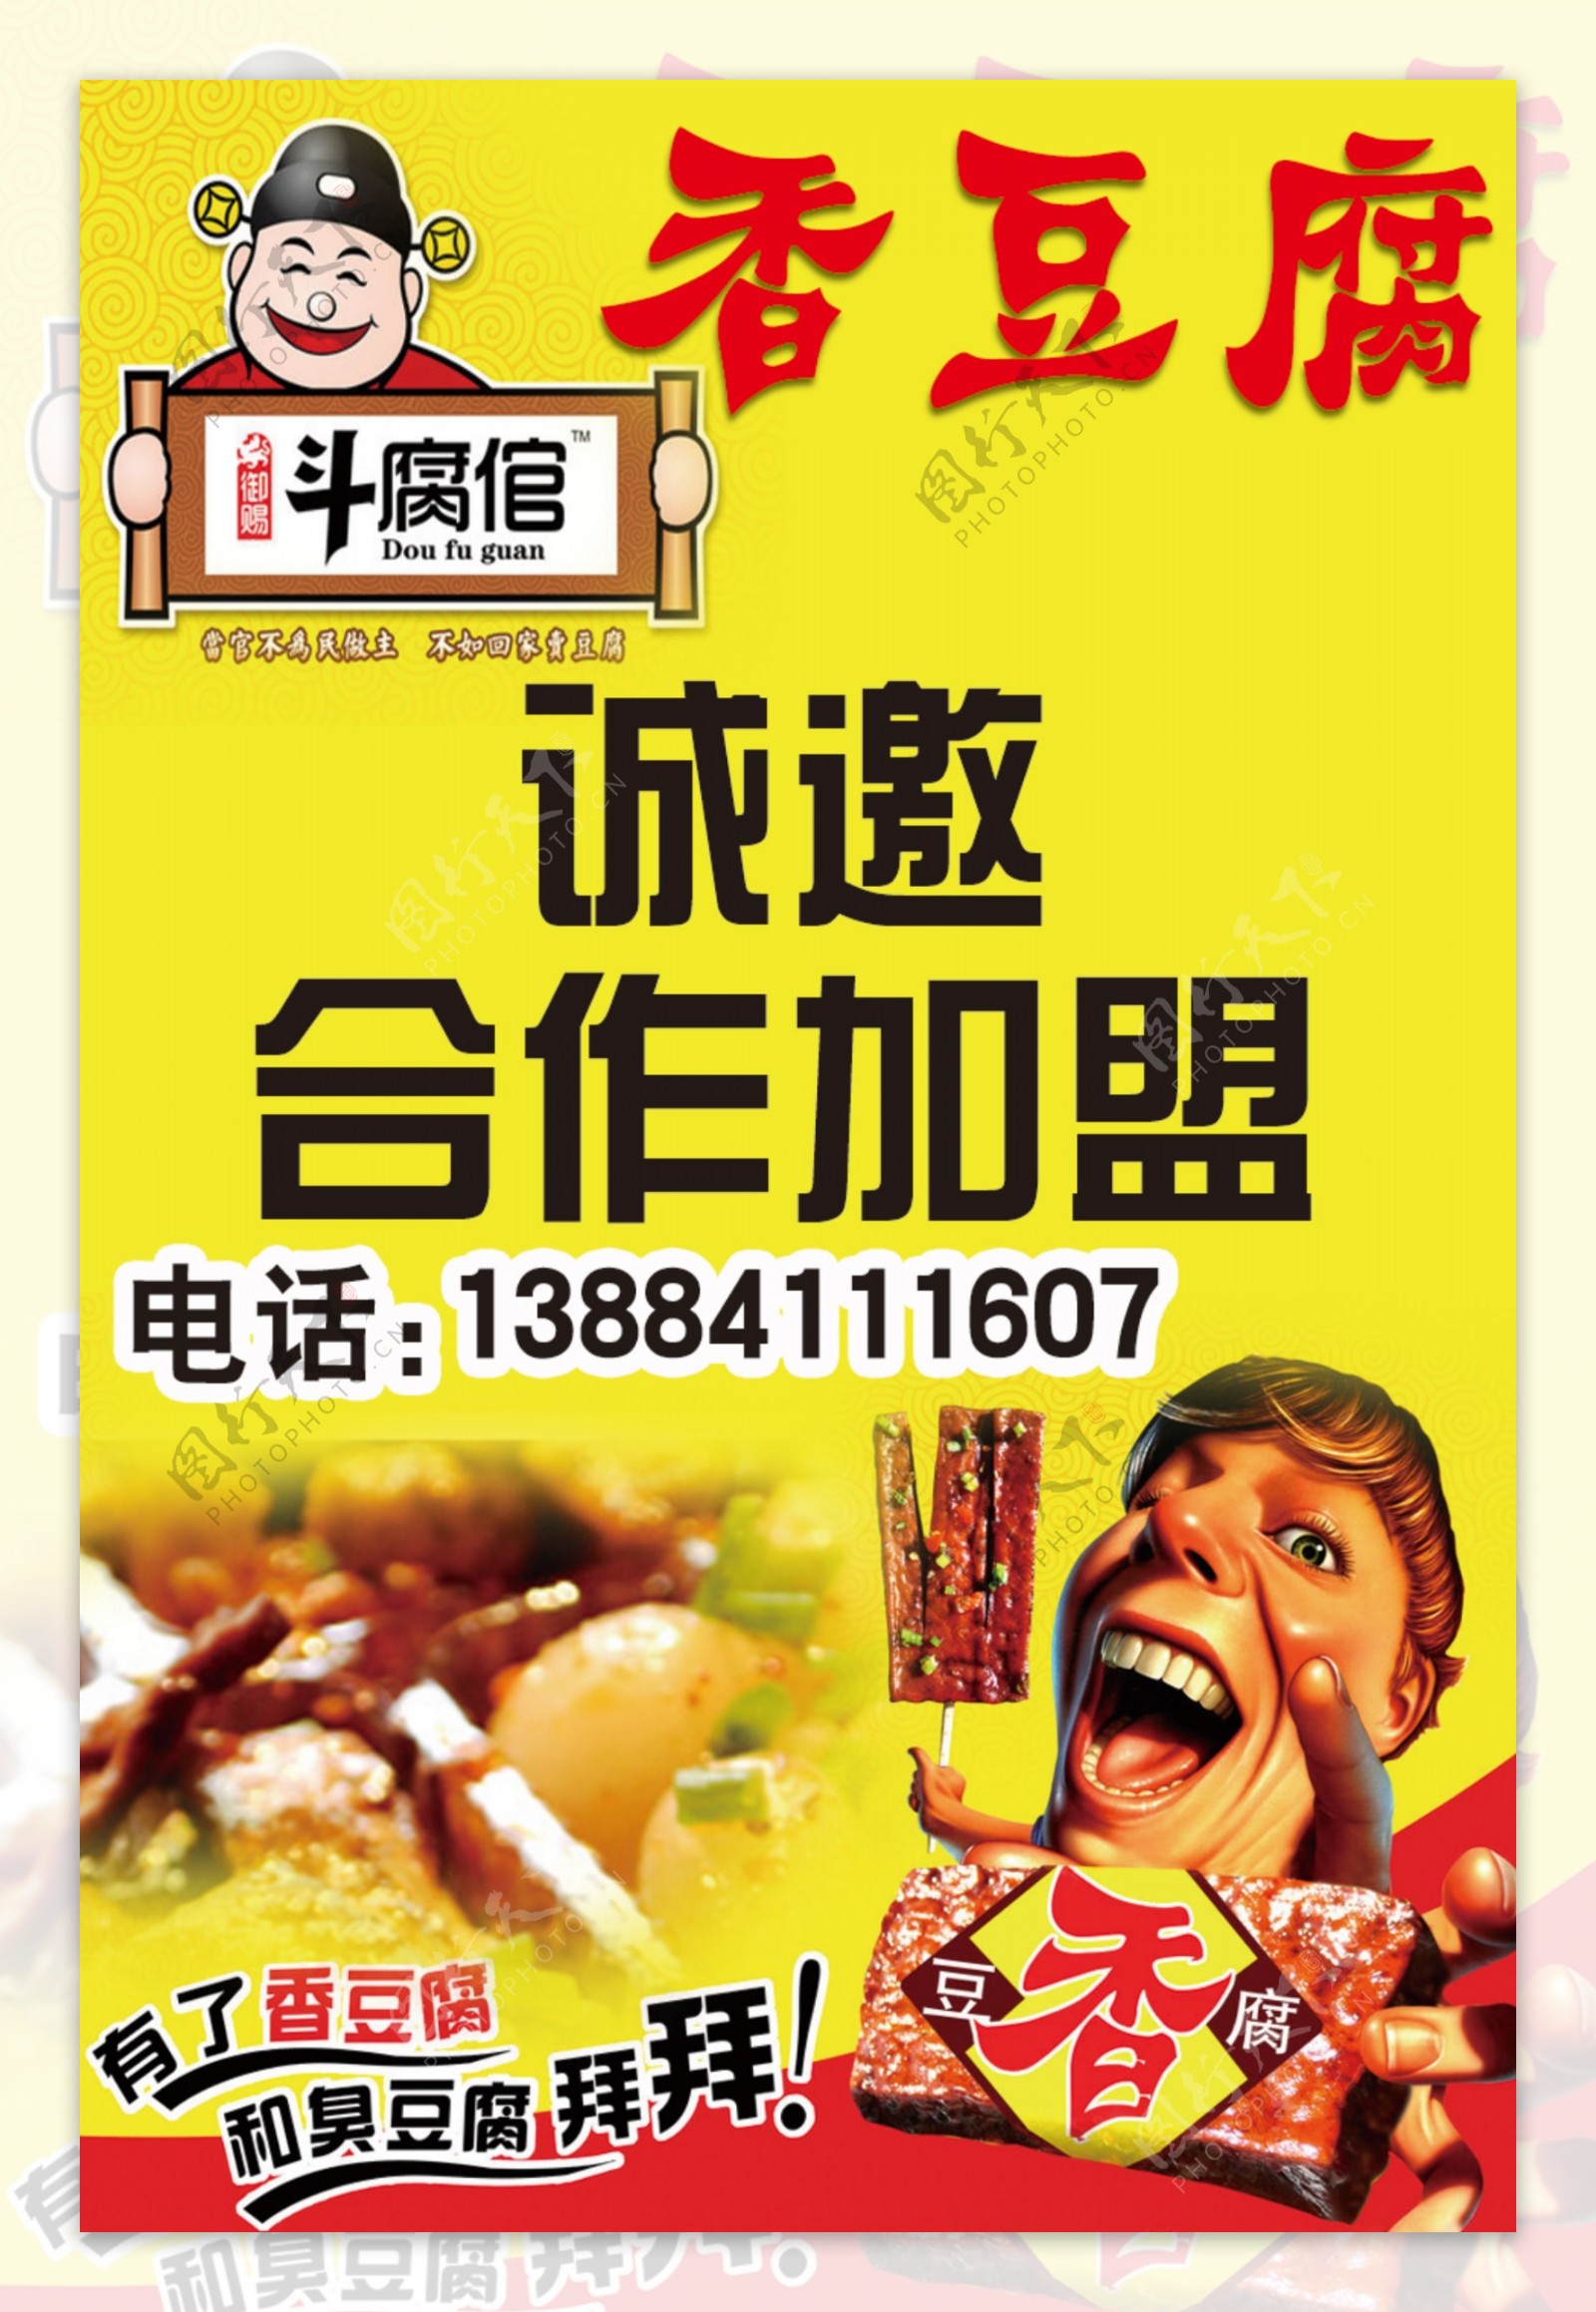 香豆腐海报图片